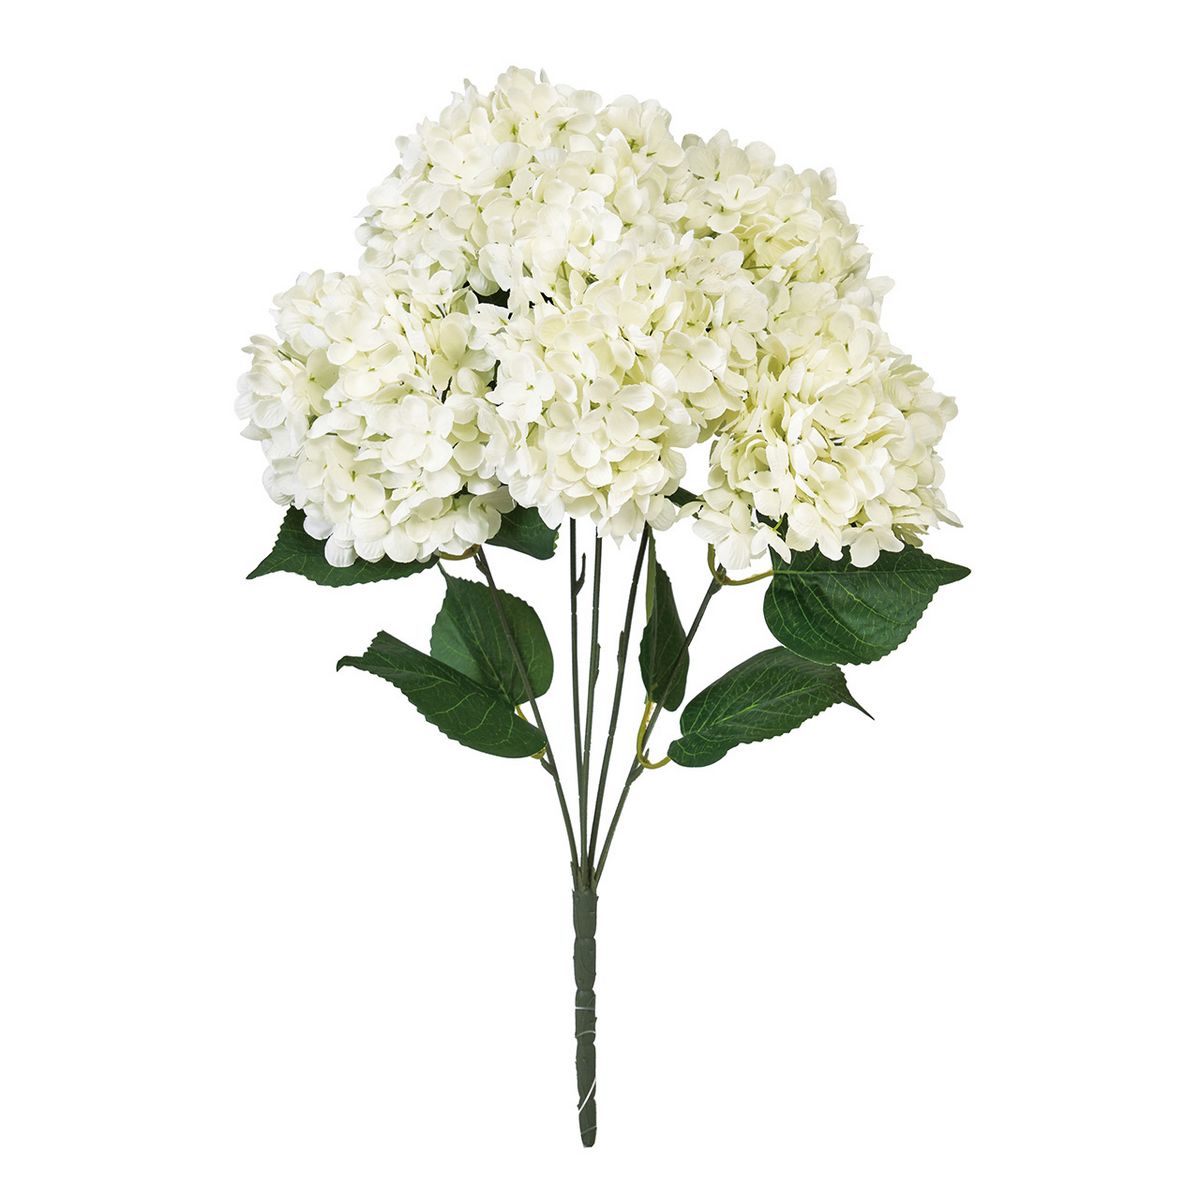 【造花】YDM/ショウナンゴム/GLKK-1226【01】【取寄】 造花（アーティフィシャルフラワー） 造花葉物、フェイクグリーン その他の造花葉物・フェイクグリーン